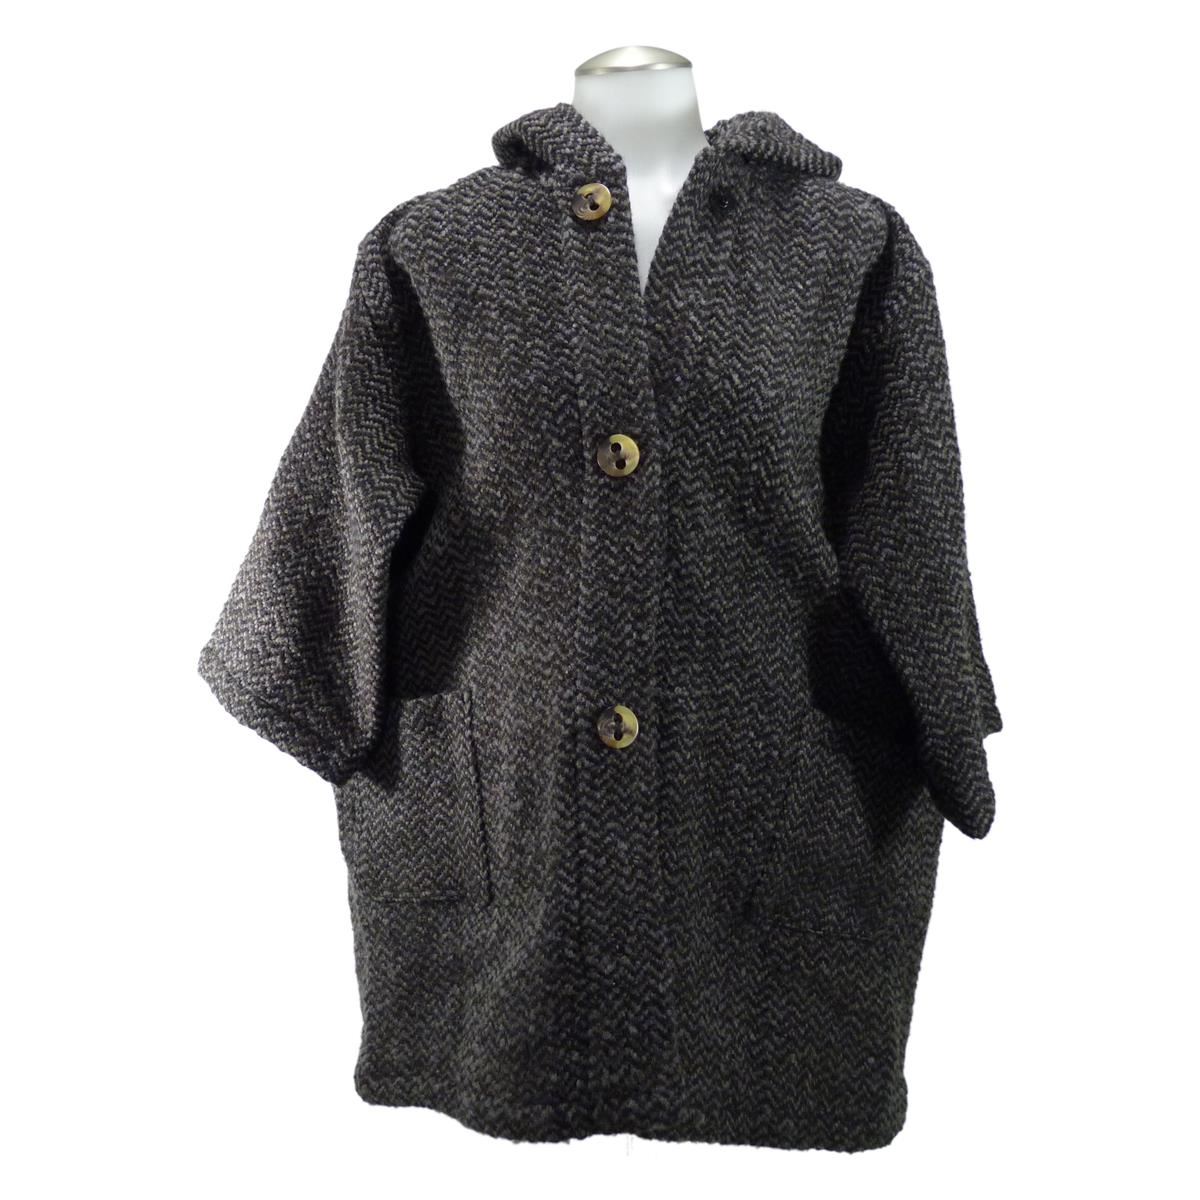 Hooded Tunic Coat by Branigan Weavers - Irish Jewelry | Irish Store ...